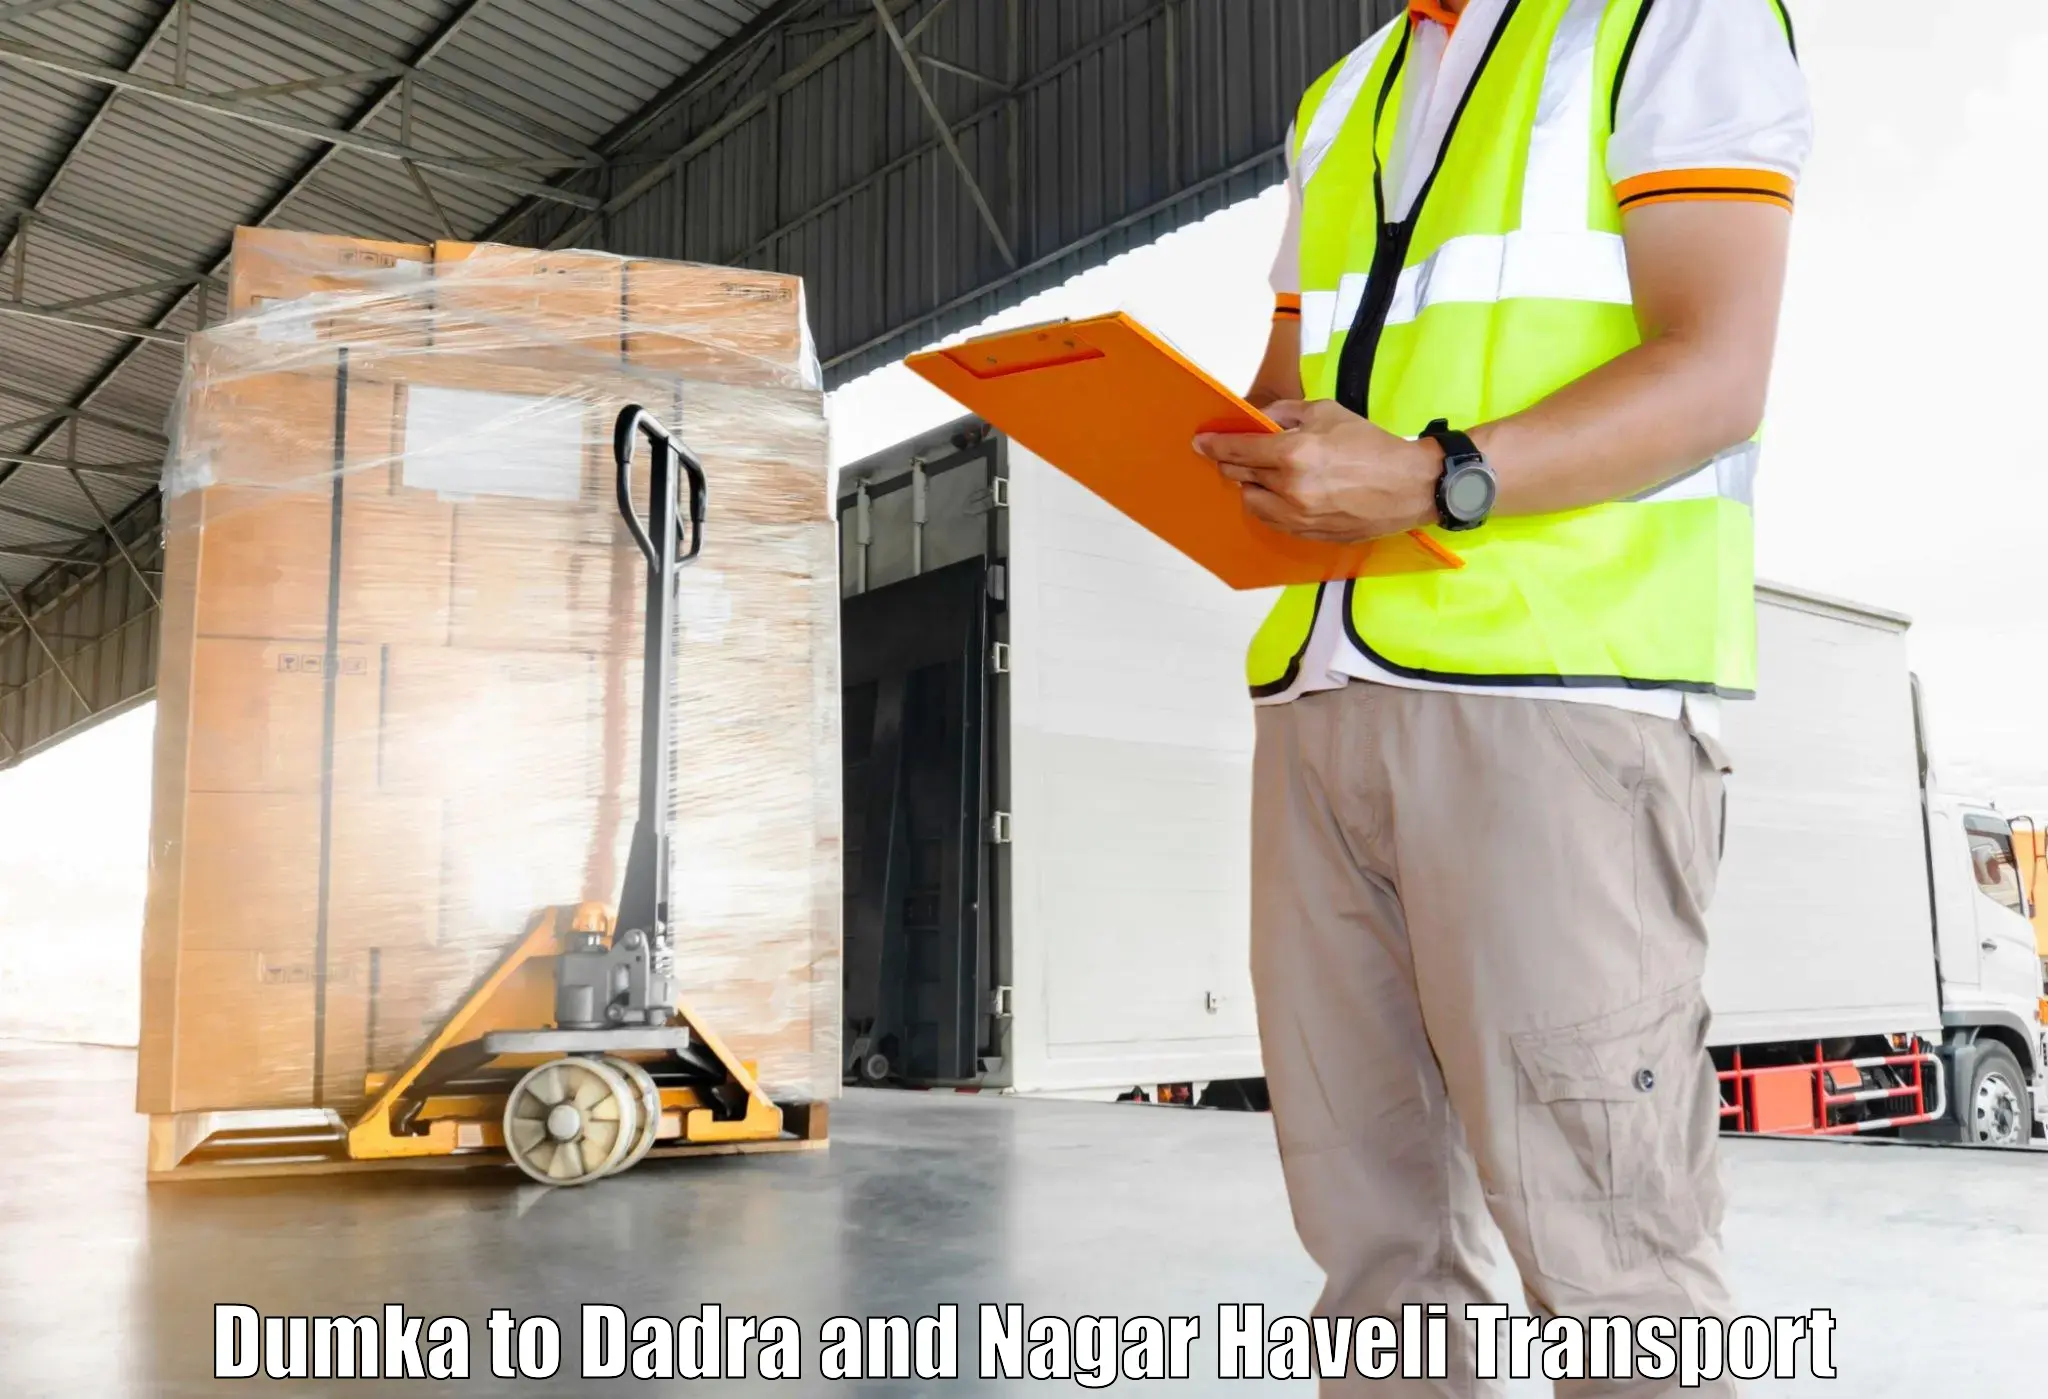 Transportation solution services Dumka to Silvassa